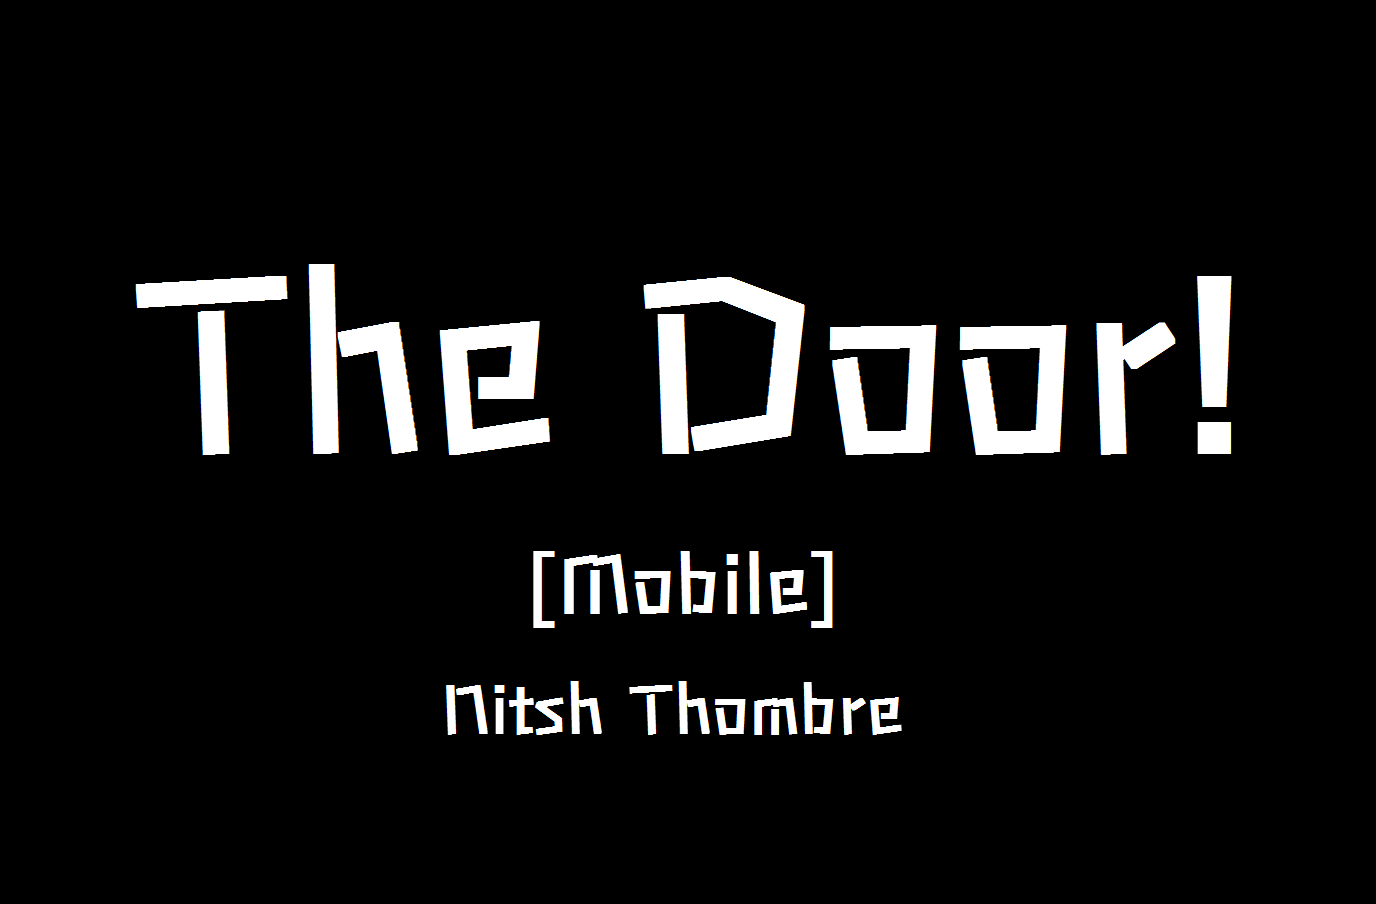 The Door! [Mobile]